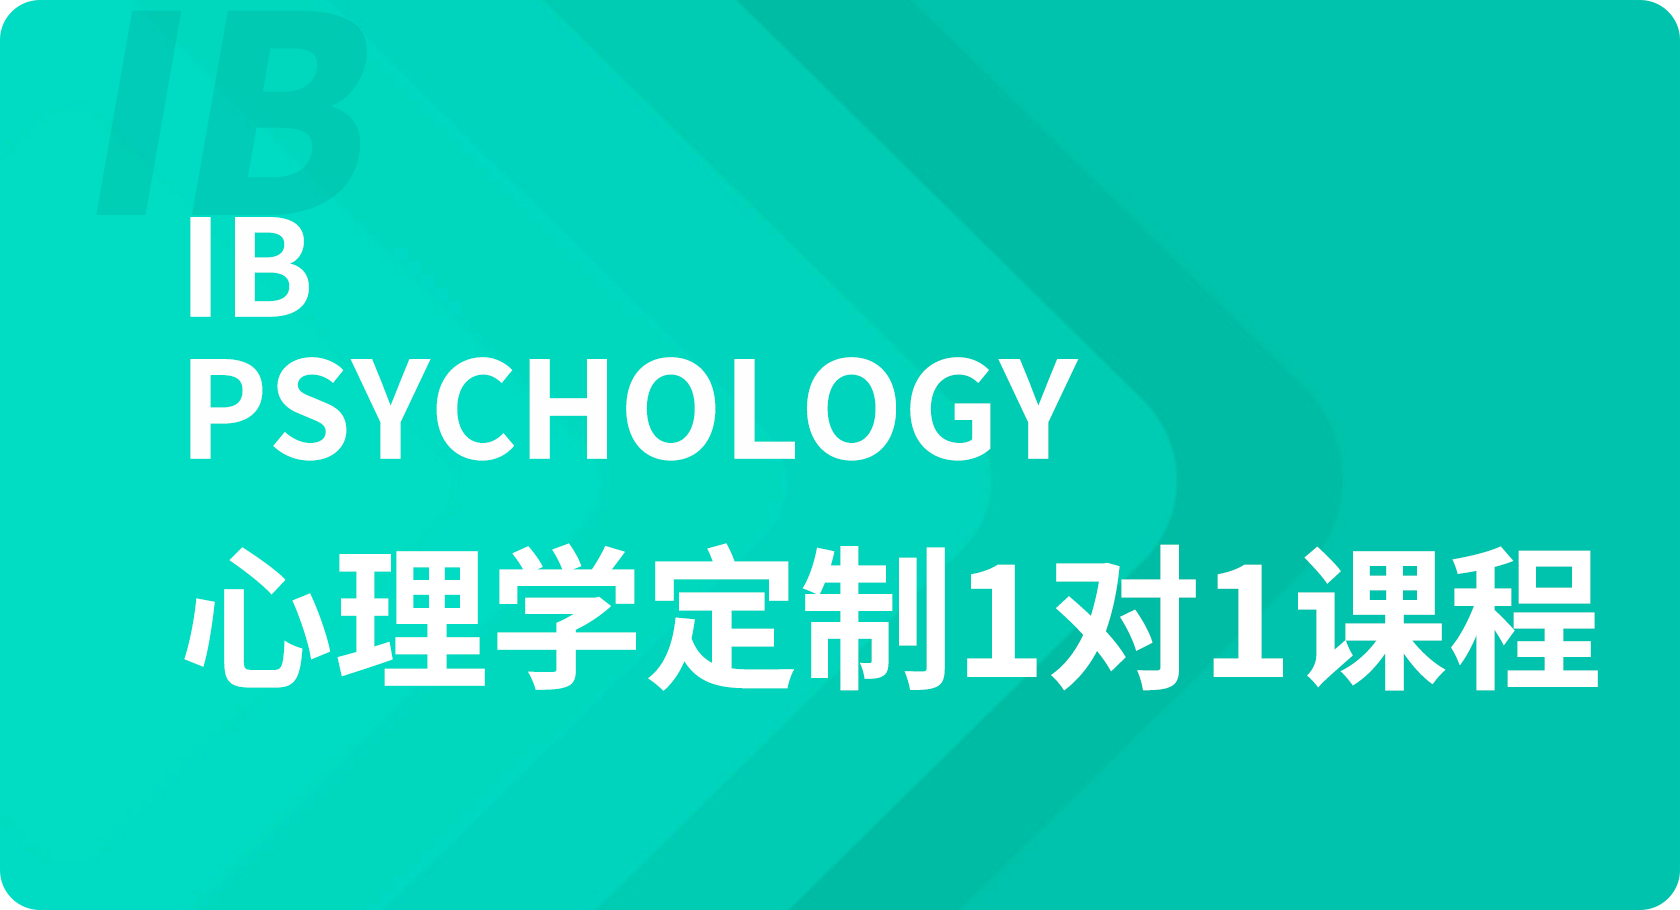 IB心理学1对1课程